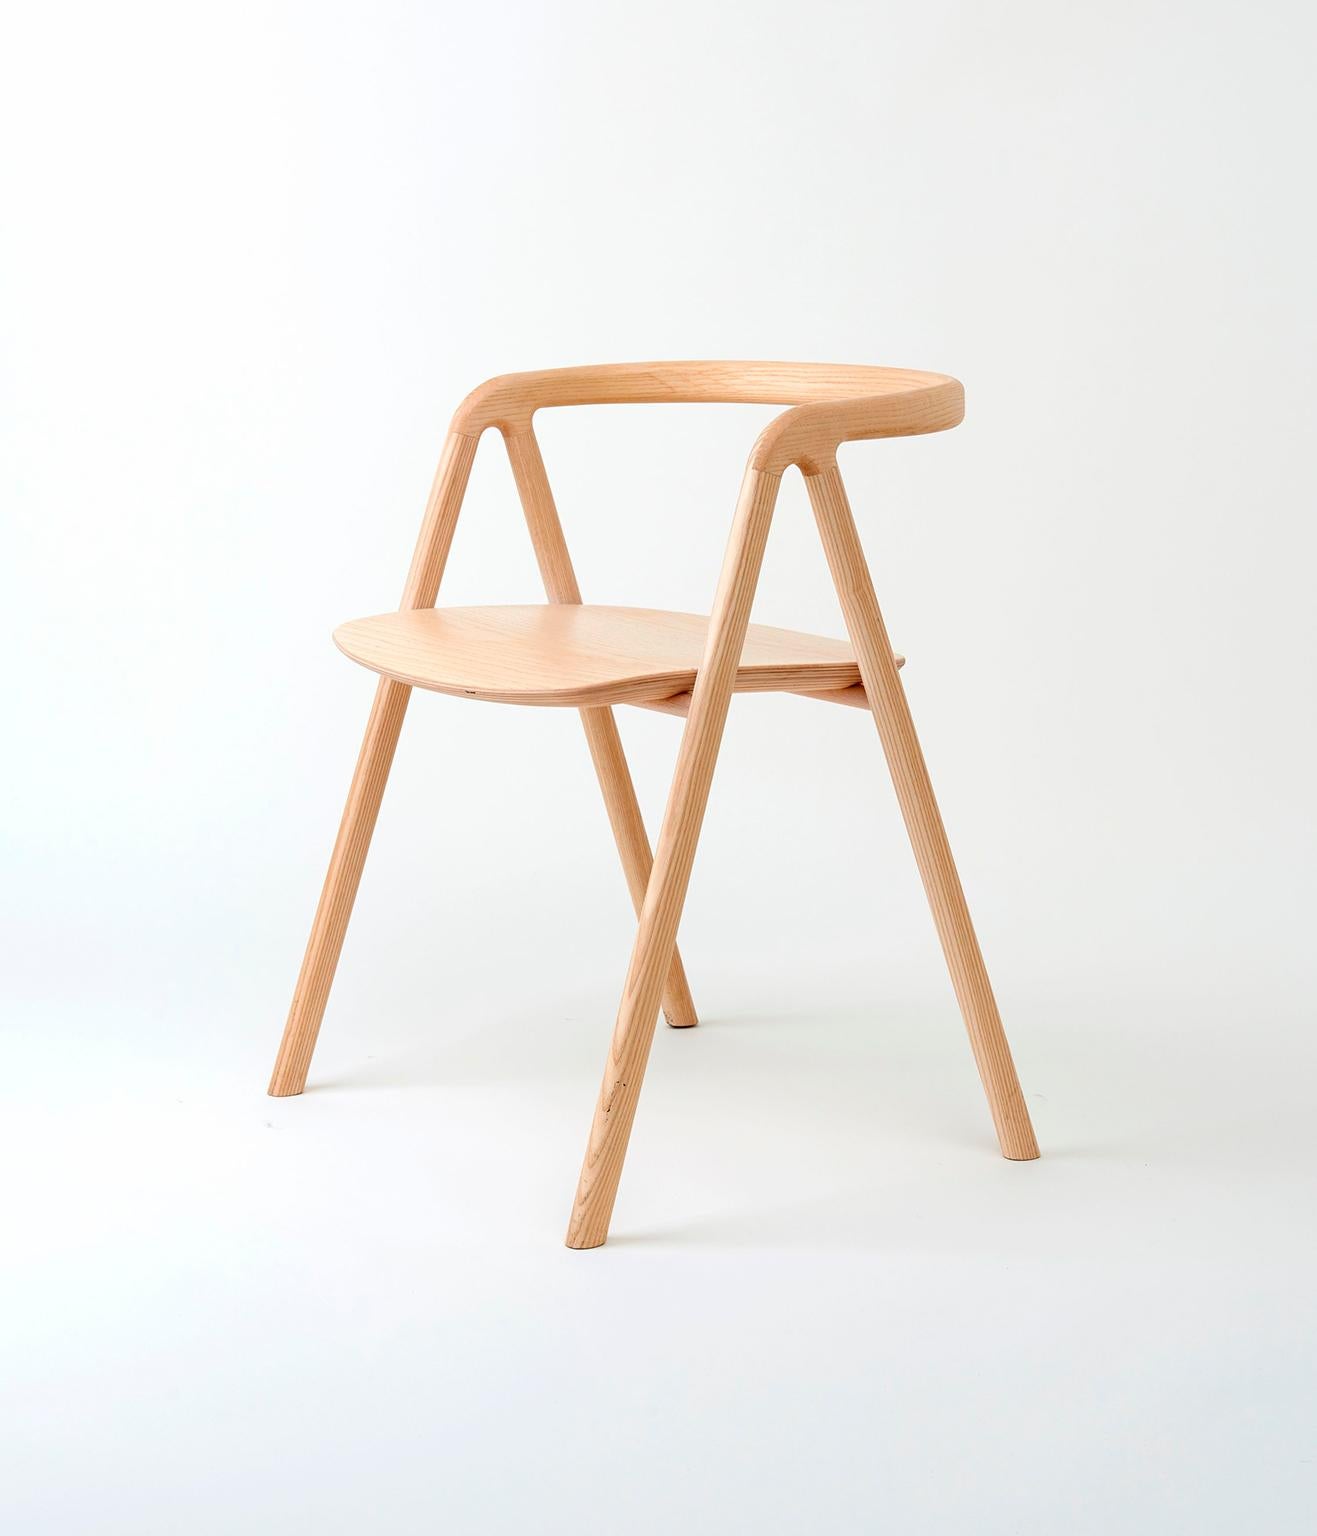 Ce classique moderne a été conçu par Saku Sysiö de l'agence de design et d'innovation Aivan. Le mobilier aux formes douces et organiques, avec sa 